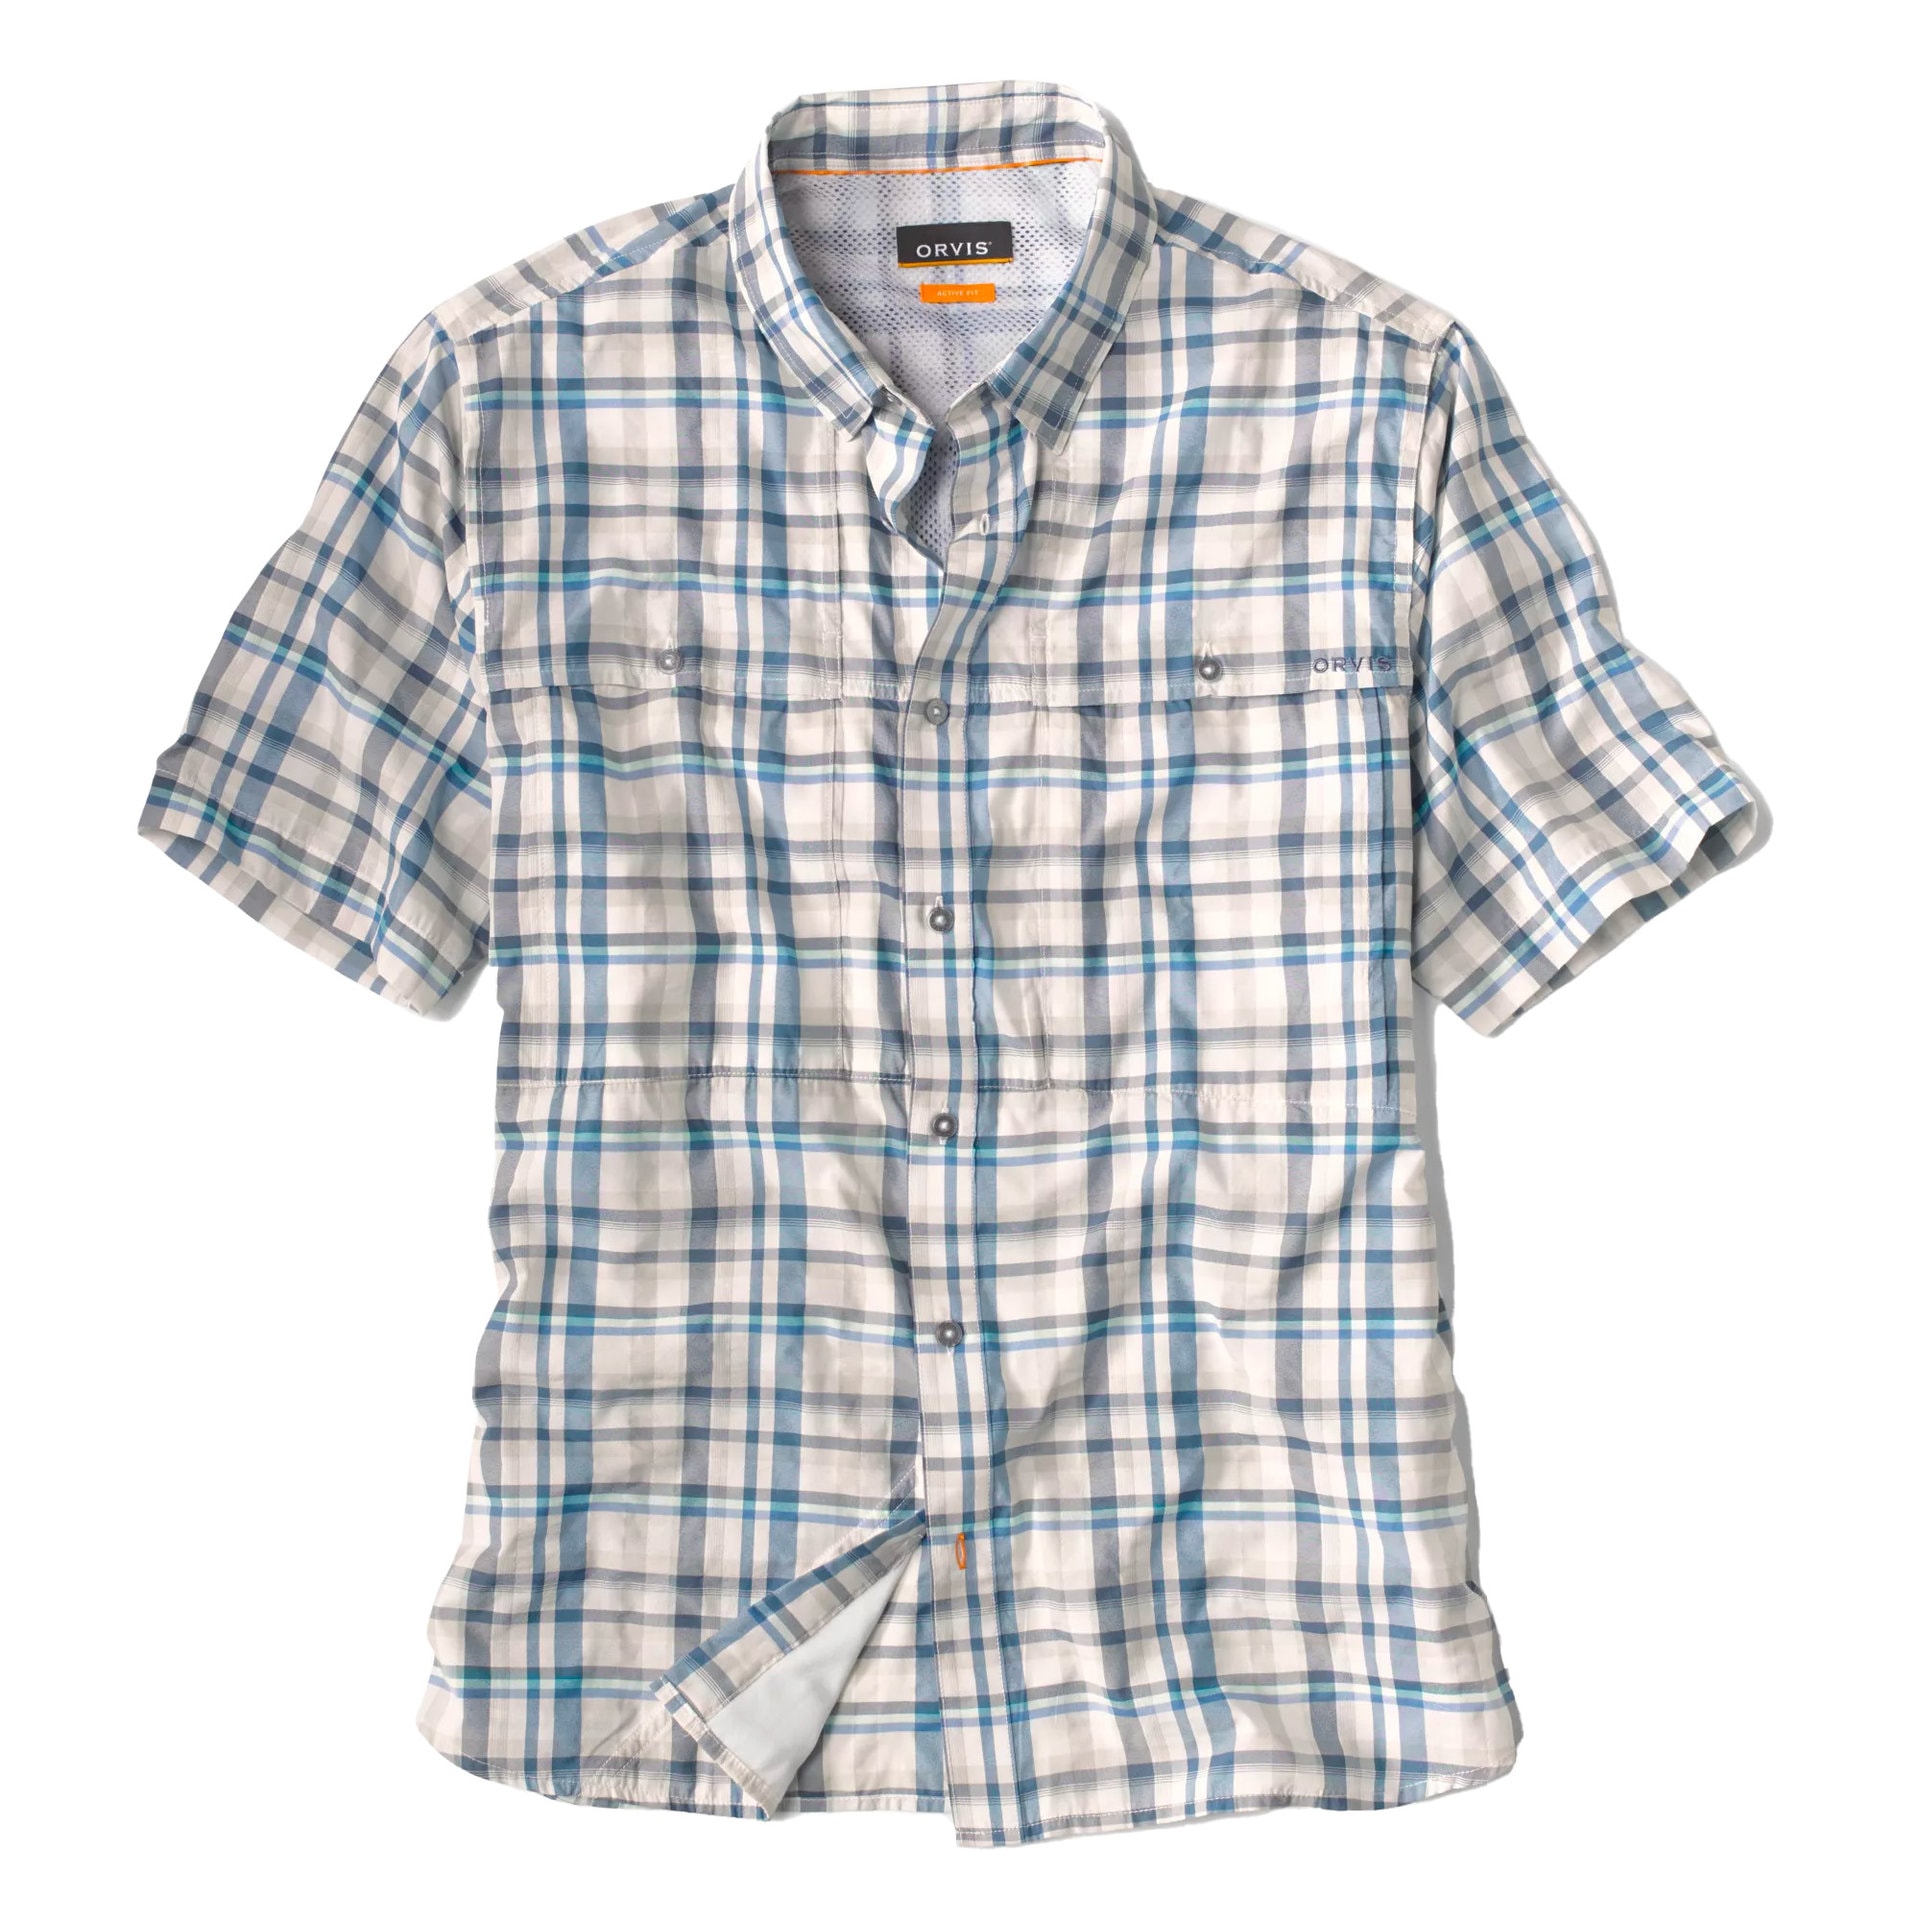 Orvis Short Sleeve Open Air Caster Shirt- oasis blue